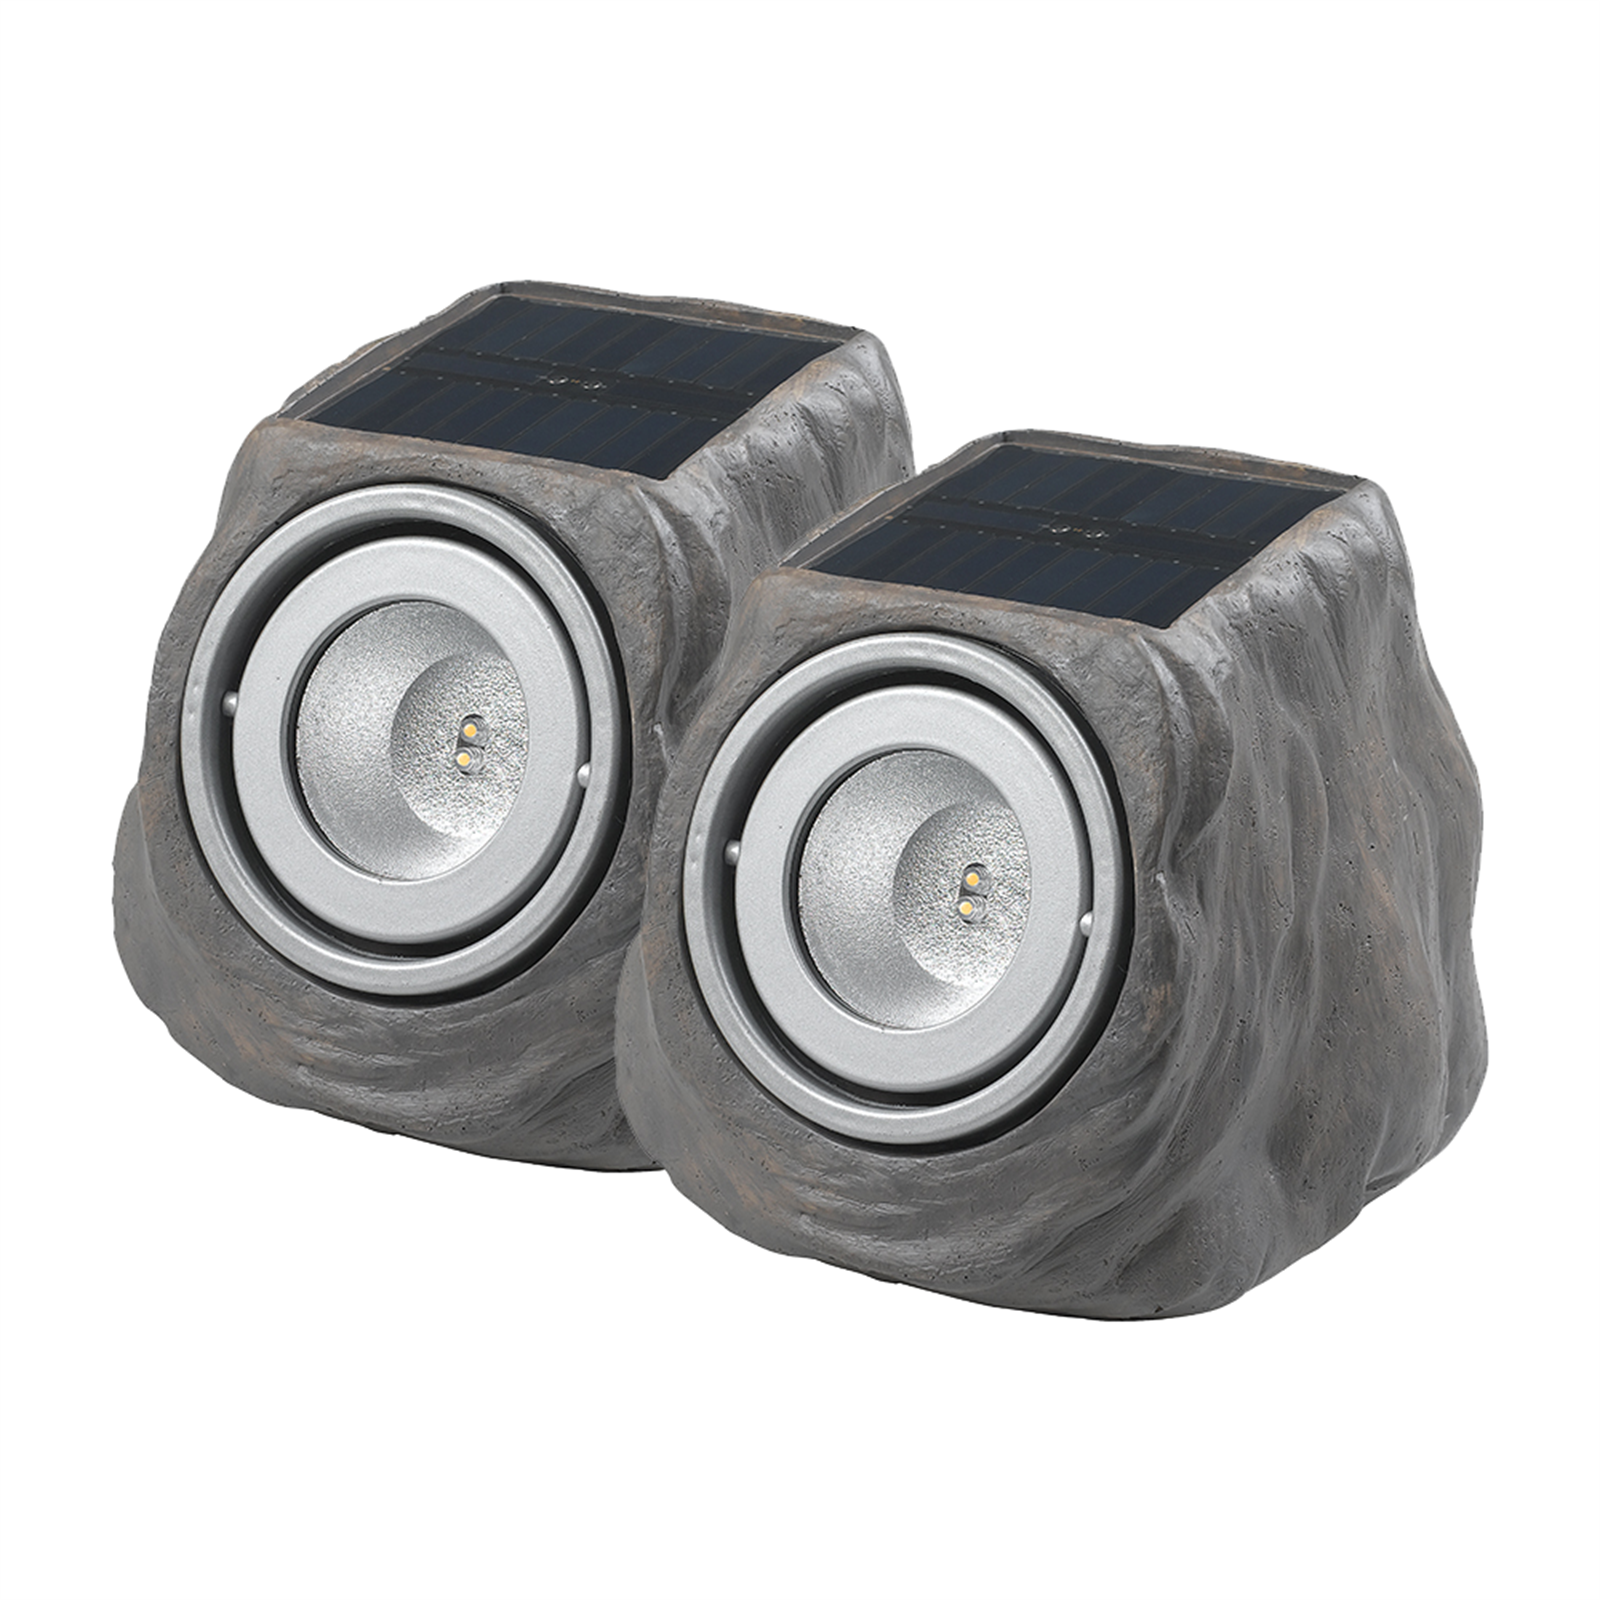 Duracell Light Grey LED Solar Rock Light - 2 Pack